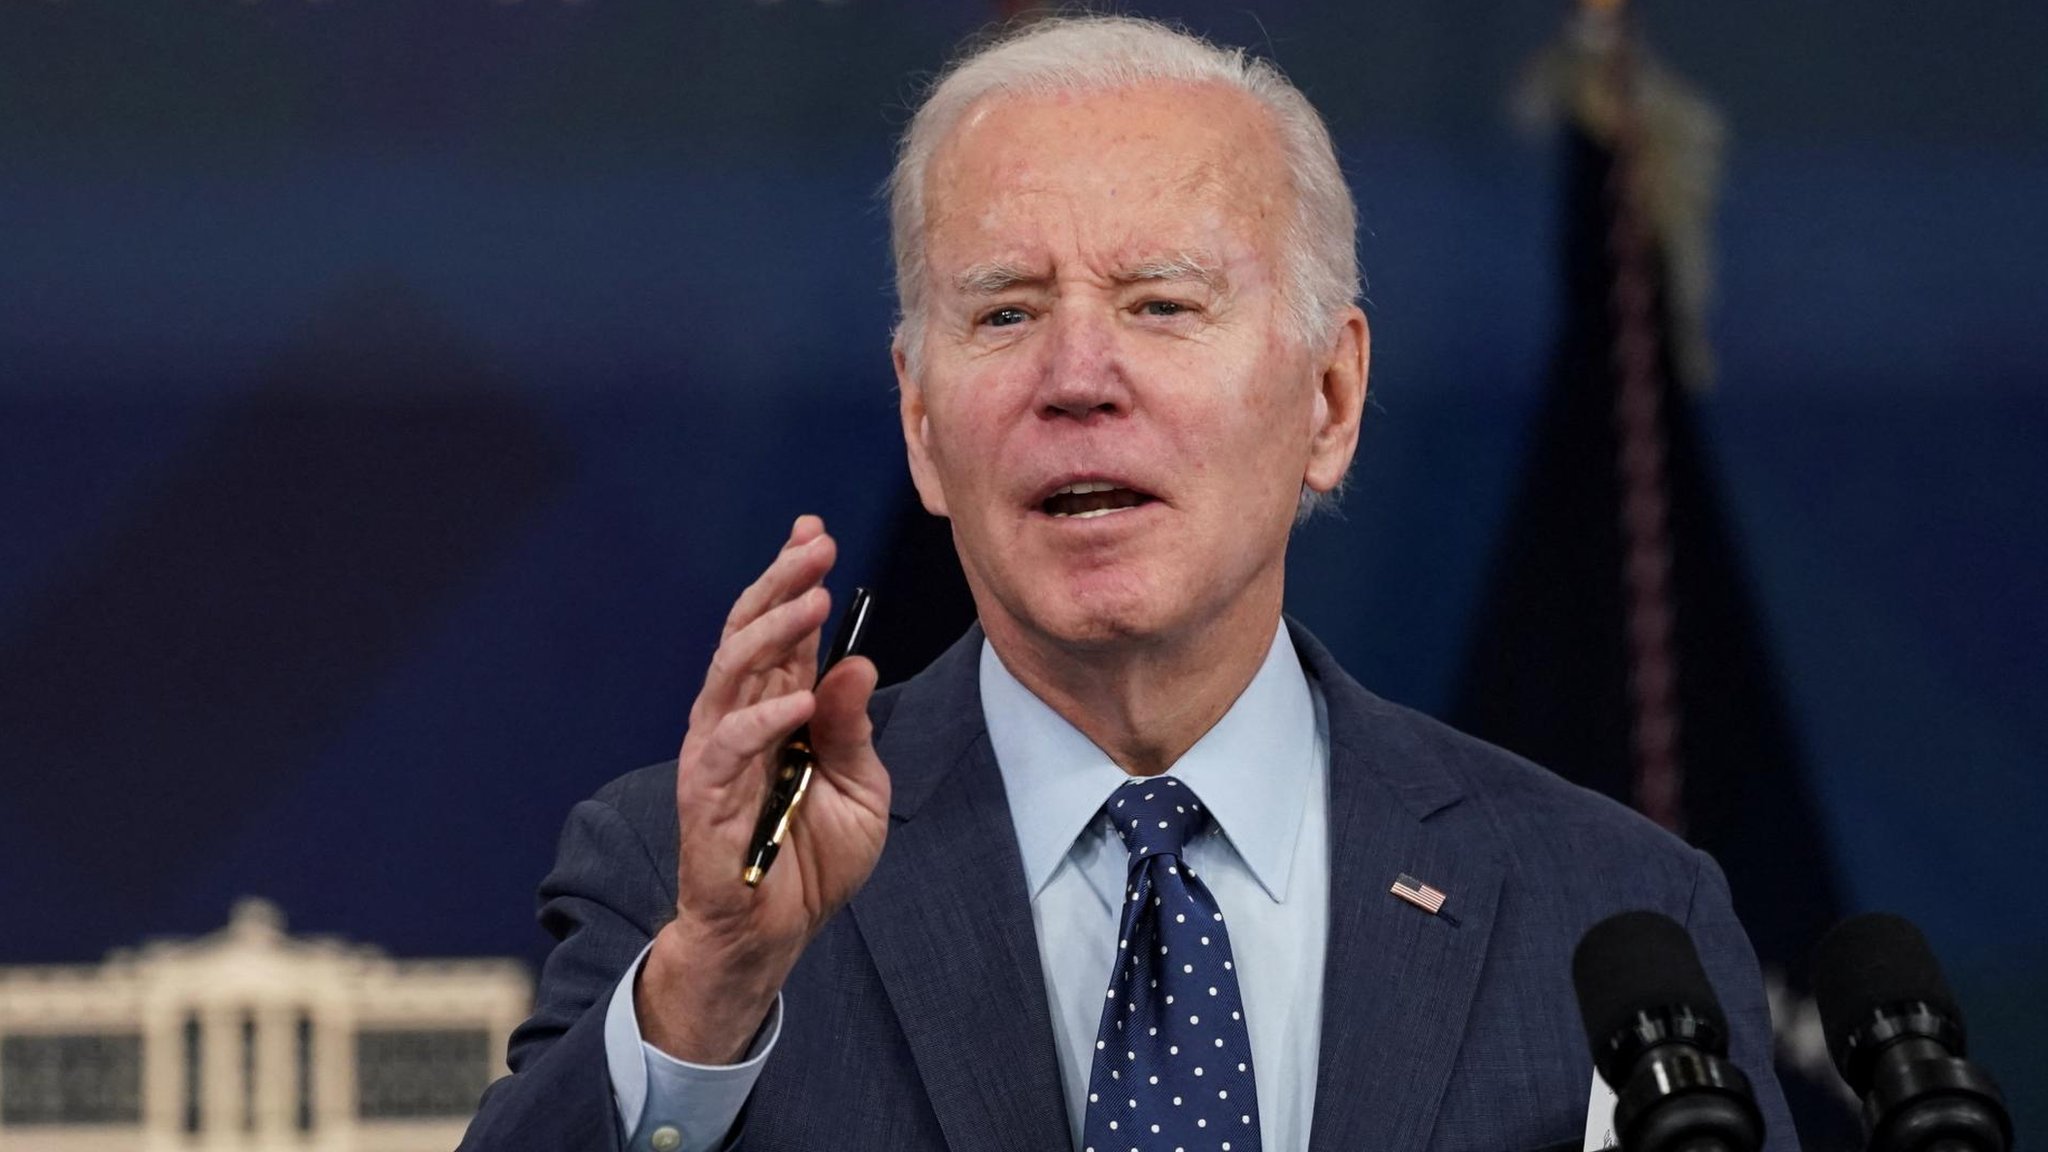 Biden says three objects likely not spy balloons